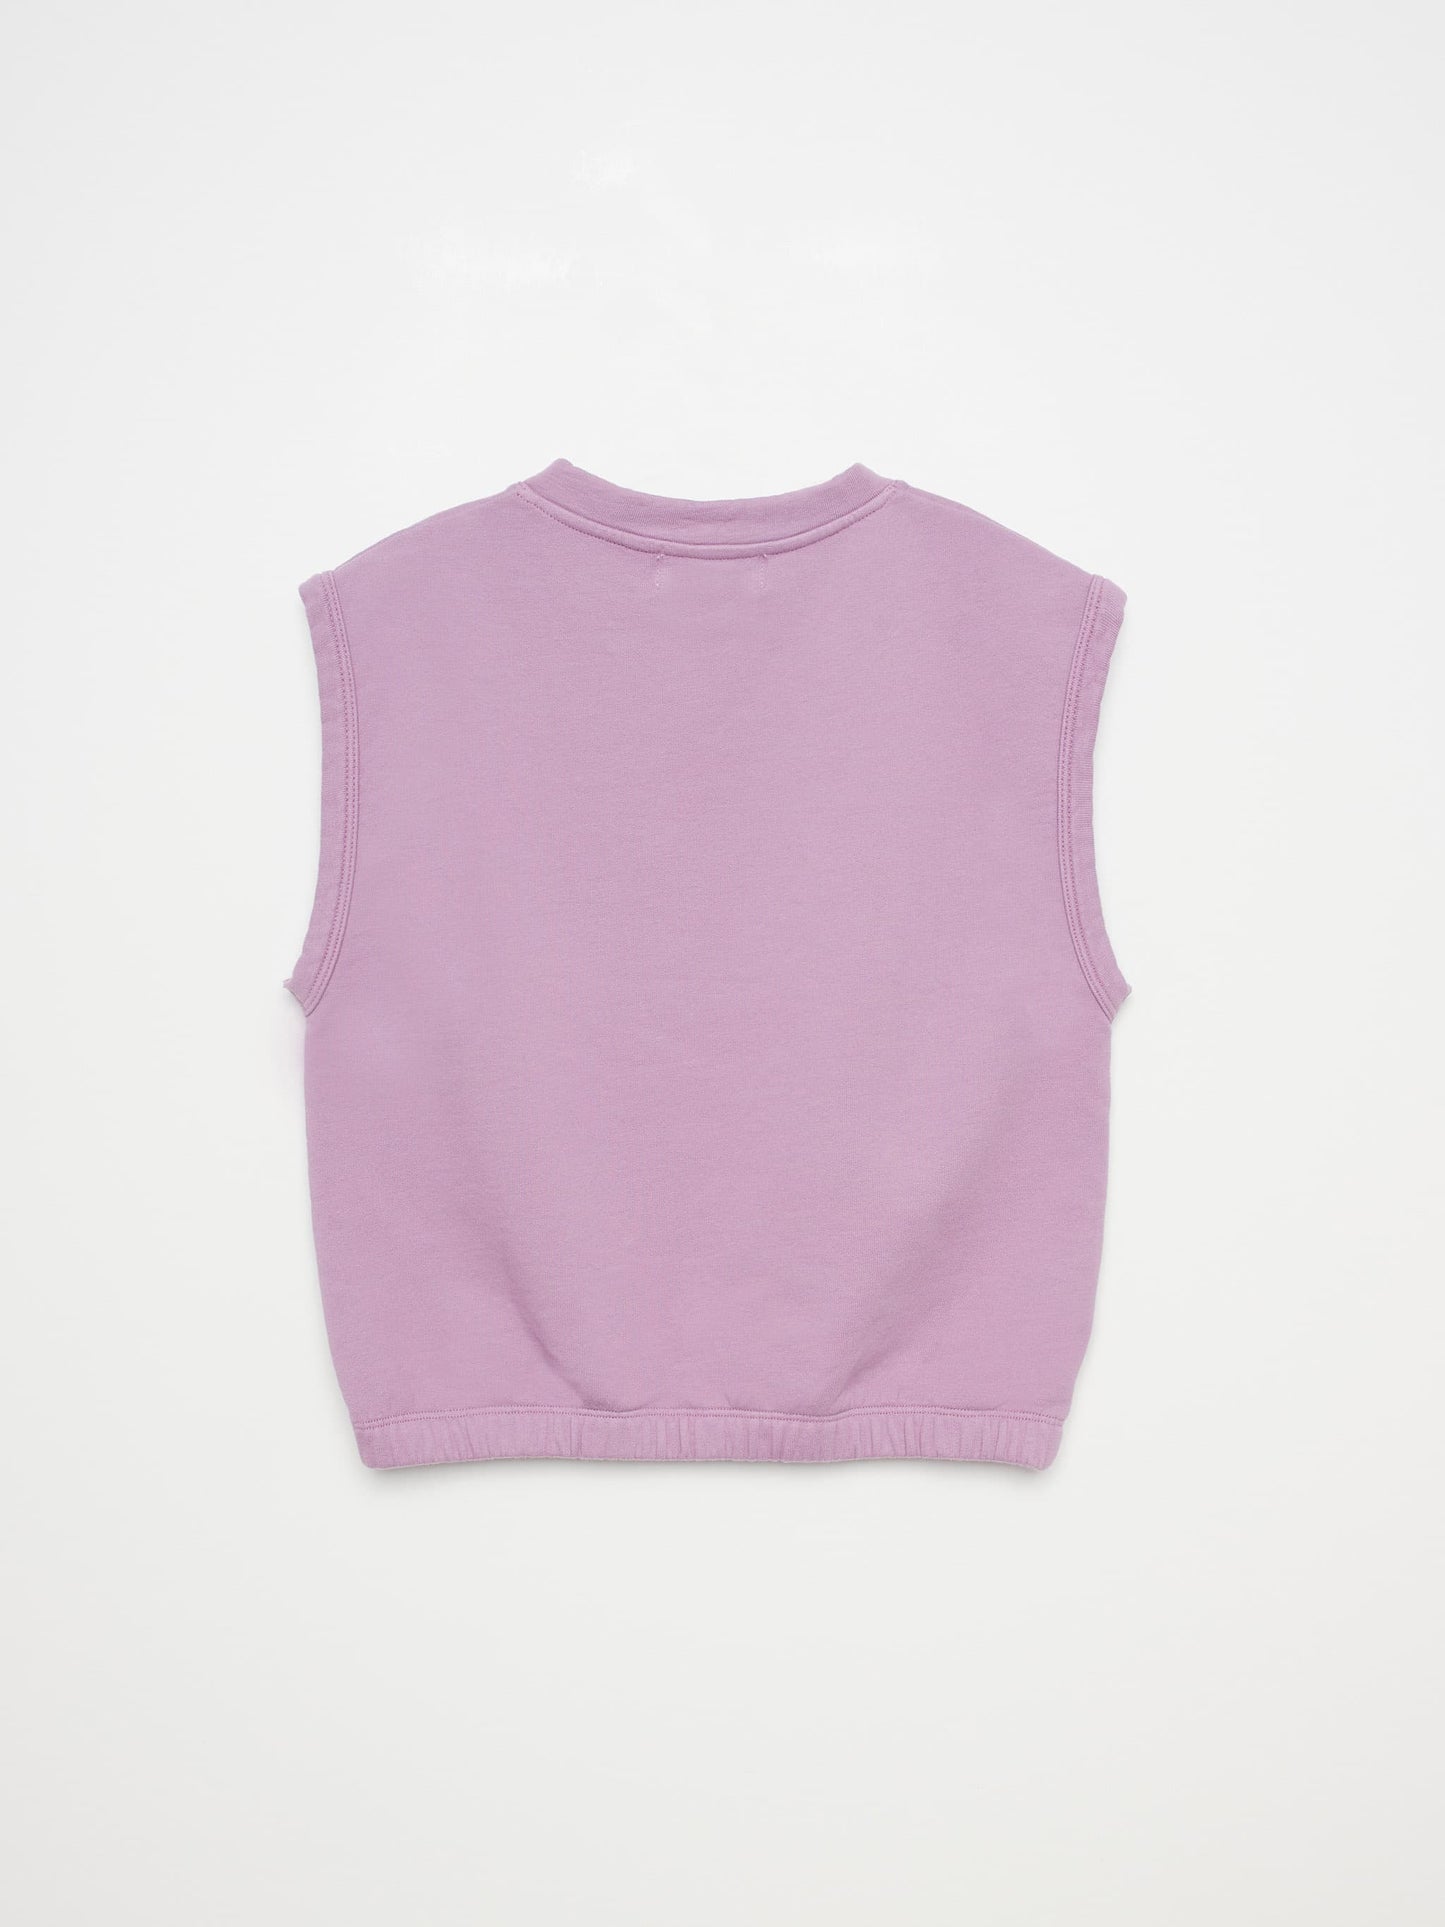 Sweatshirt nº06 Lavender Herb